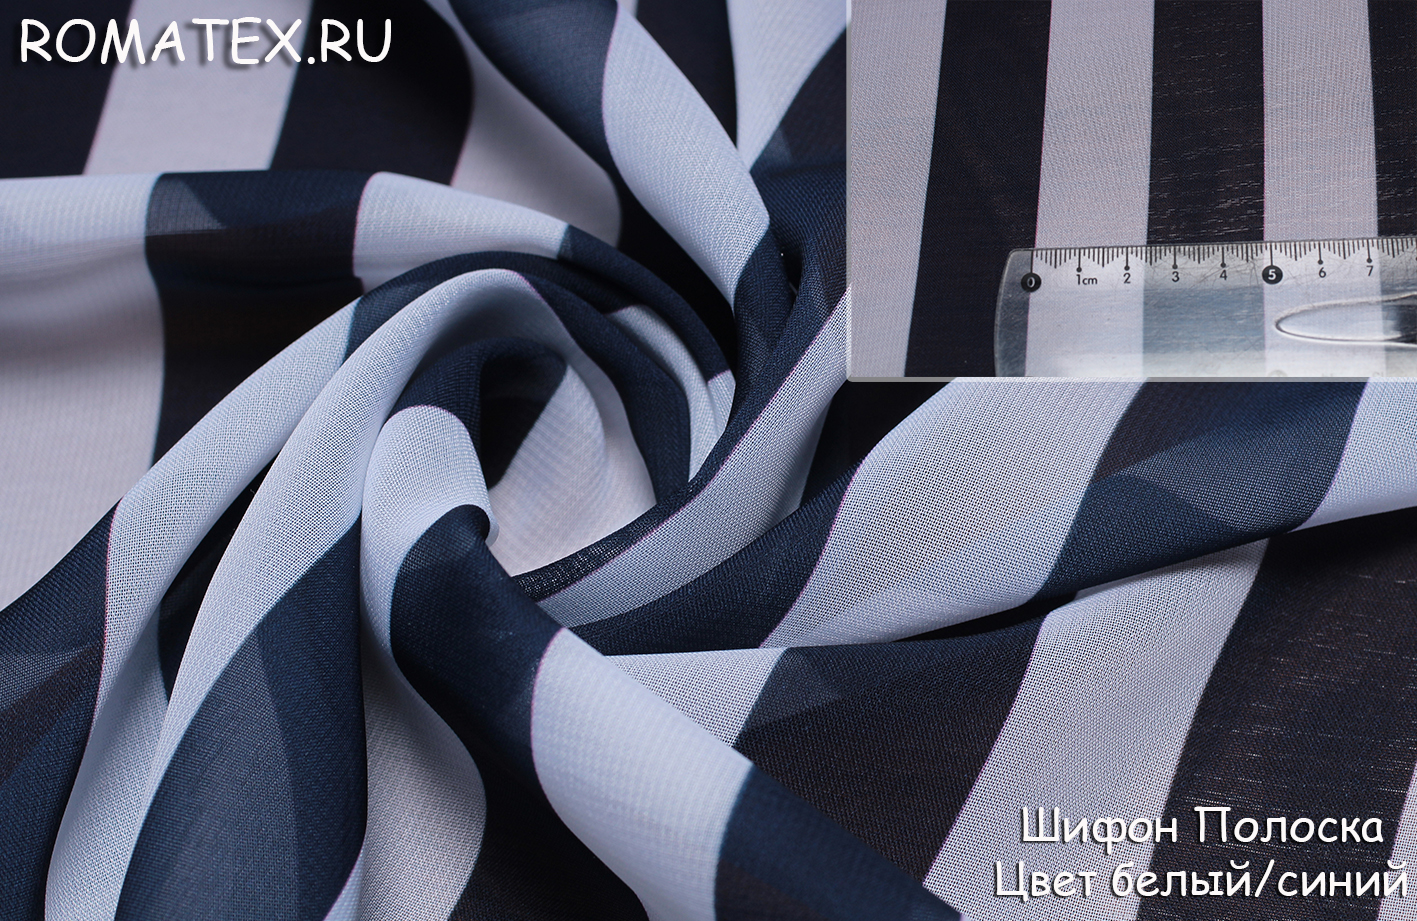 Ткань Шифон полоска цвет темно-синий/белый - купить в магазине Роматекс